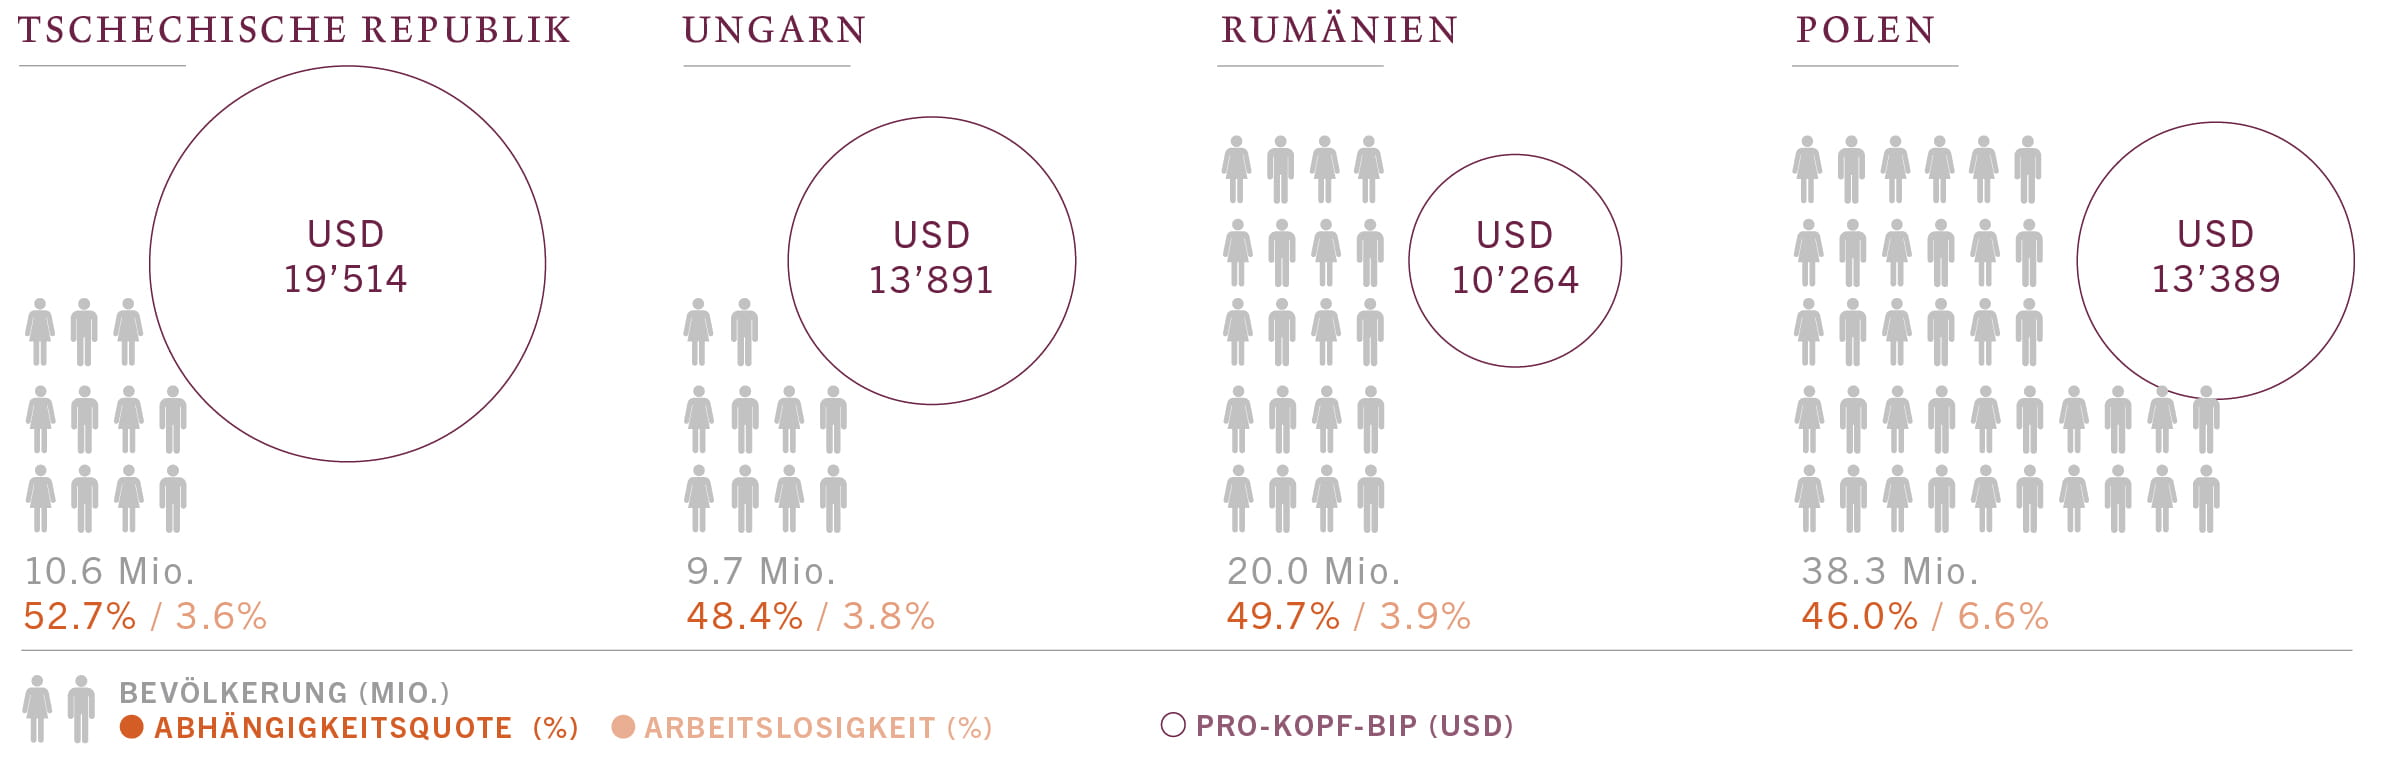 Infografik zu Bevölkerung, Pro-Kopf-BIP, Arbeitslosigkeit und Abhängigkeitsquoten in Mittel- und Osteuropa